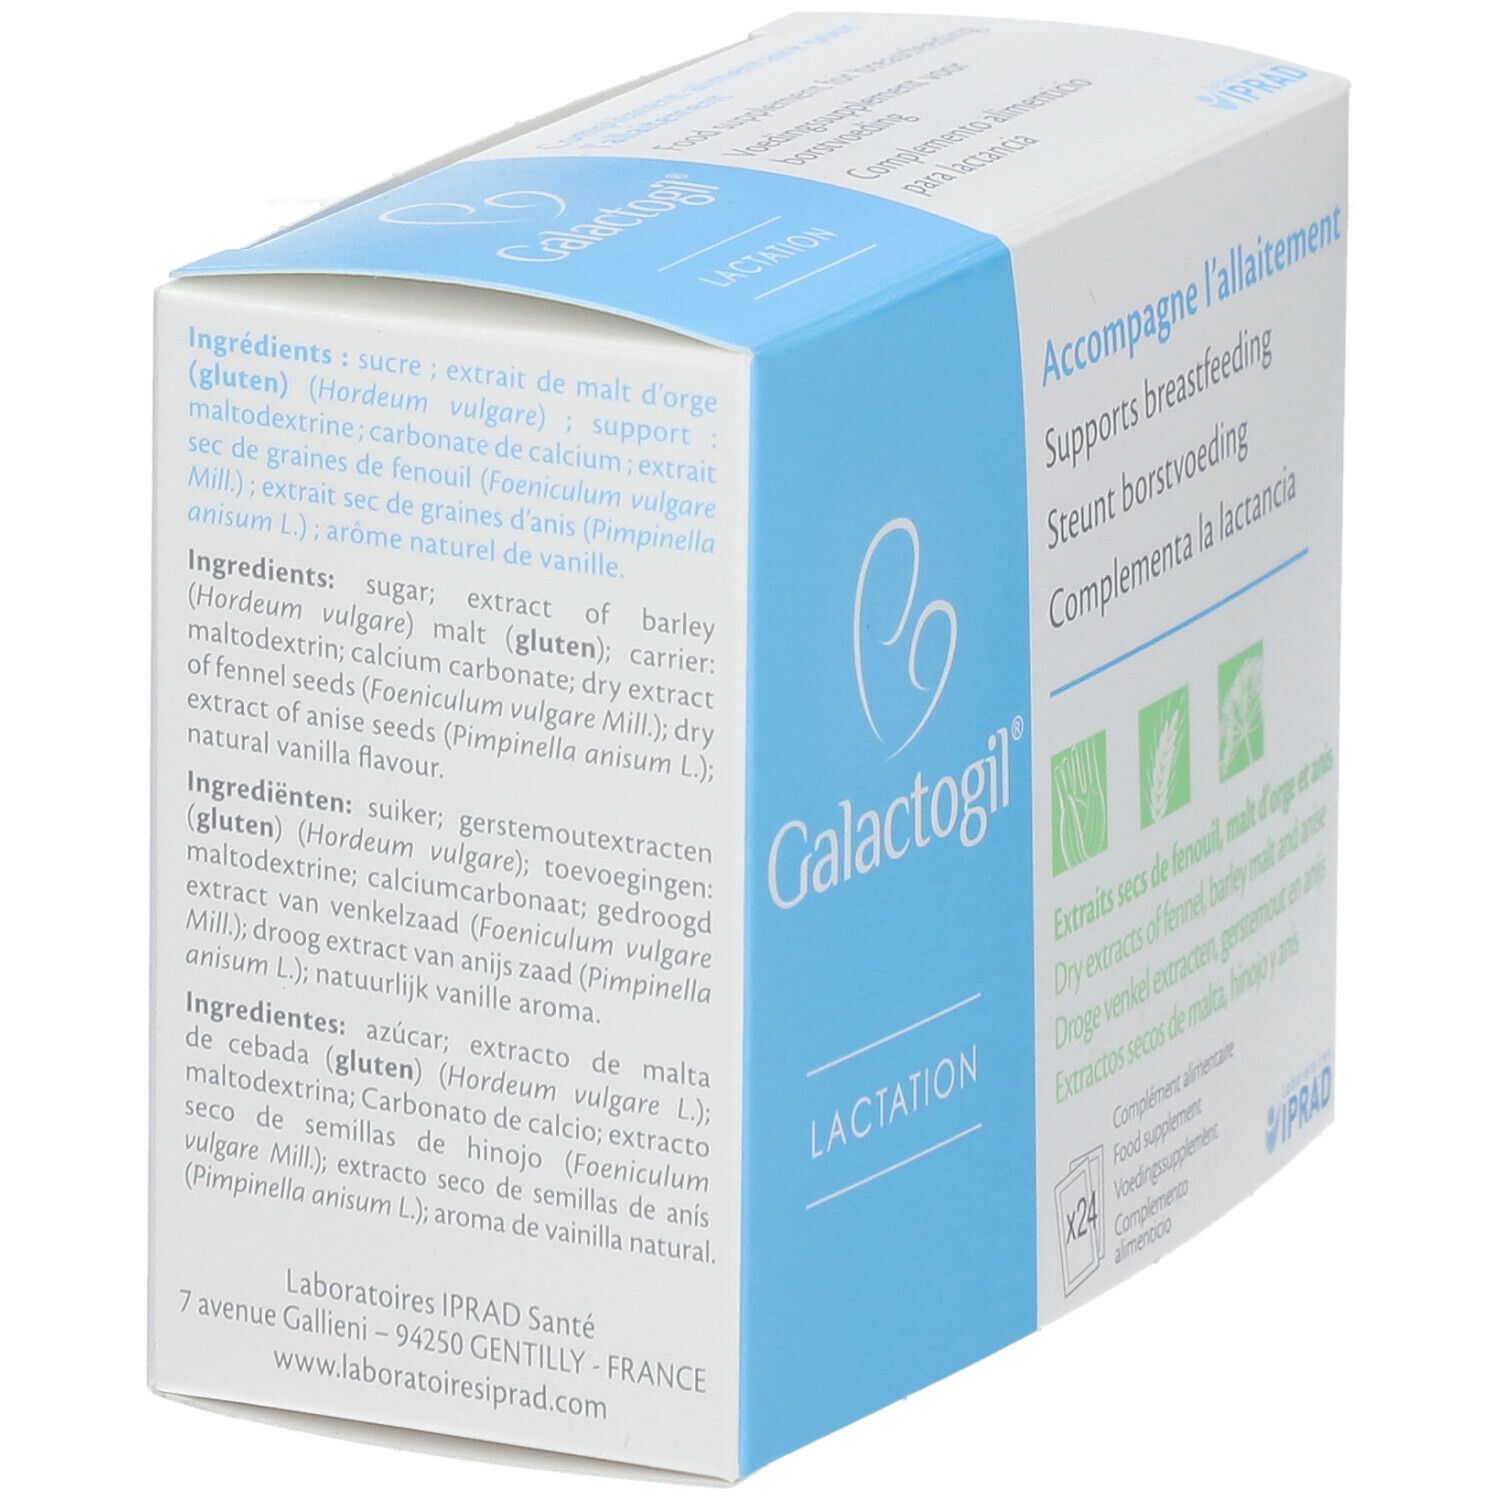 Galactogil Lactation, boîte de 24 sachets - La Pharmacie de Pierre